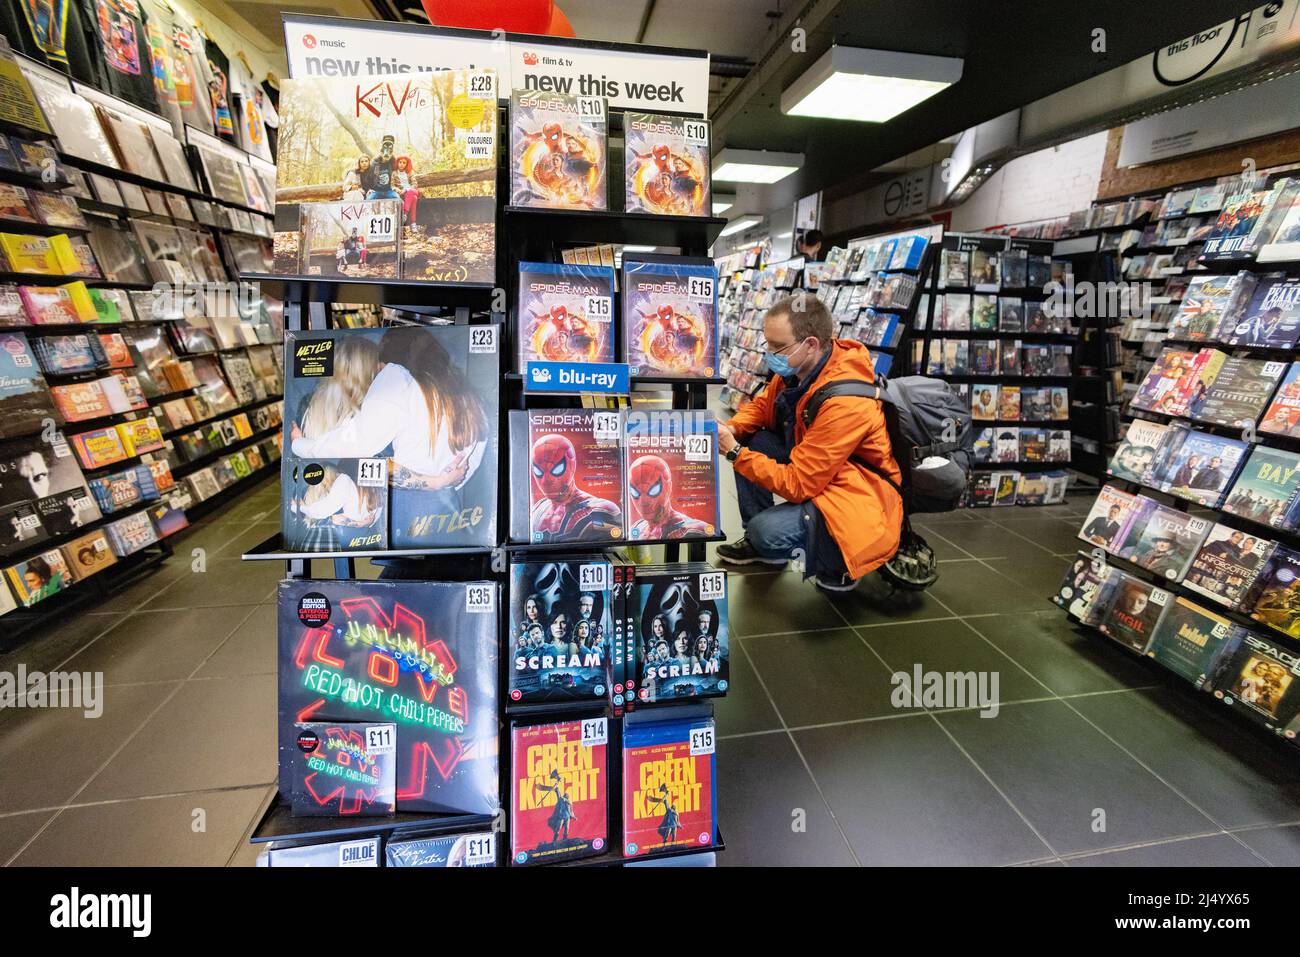 COVID shopping UK; Hombre comprando durante la pandemia de COVID usando una máscara y comprando DVDs en el interior de una tienda durante la pandemia de COVID 19, Cambridge UK Foto de stock